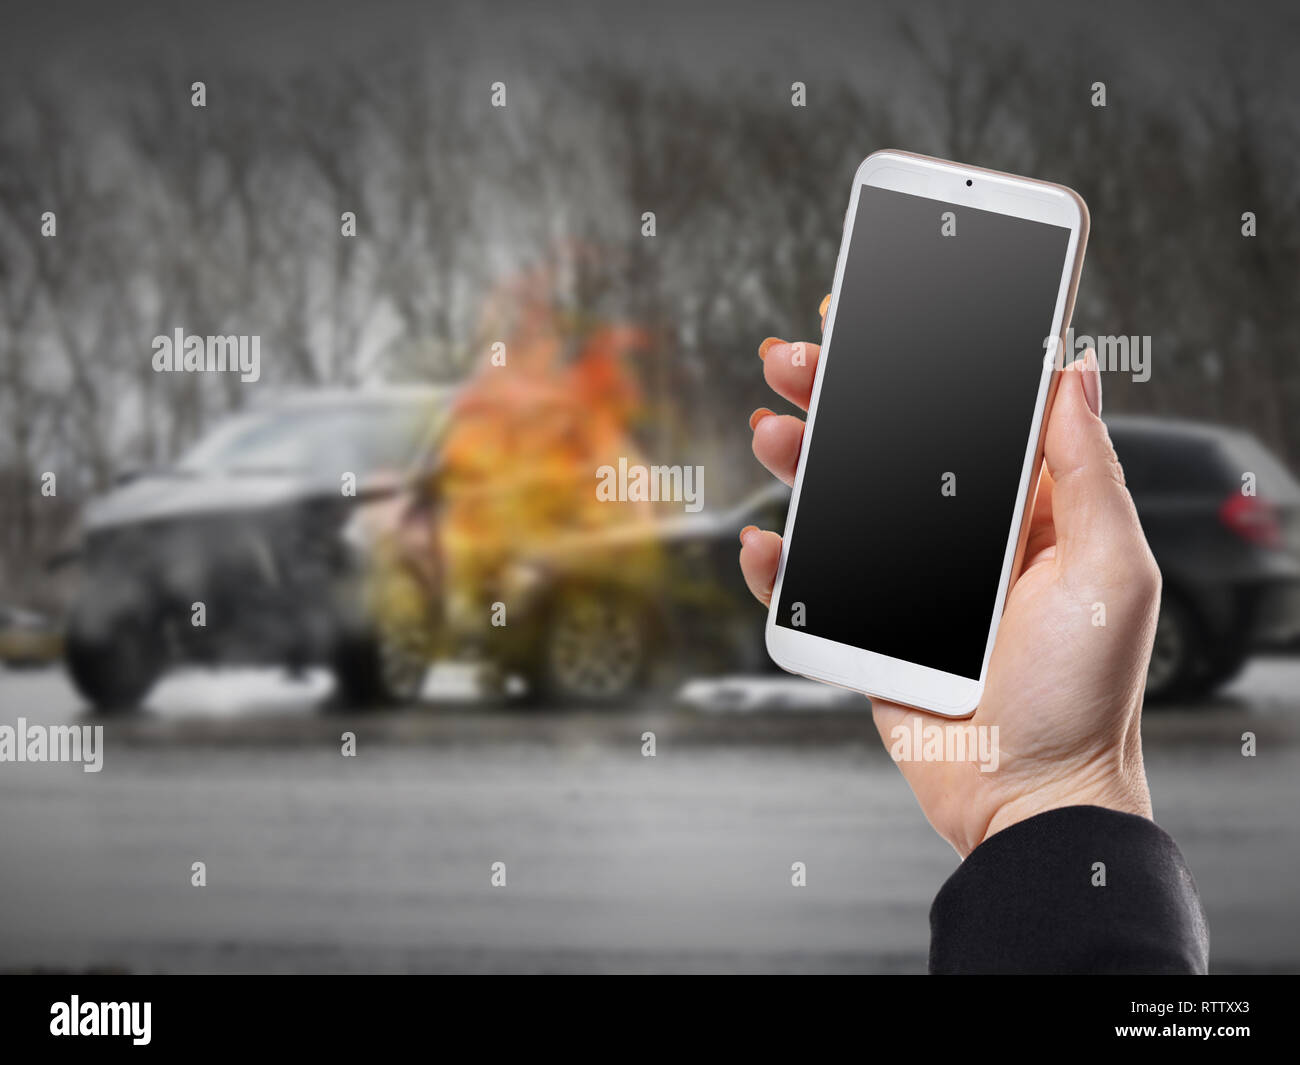 Con el teléfono de mano femenina sobre los antecedentes de un accidente de coche Foto de stock